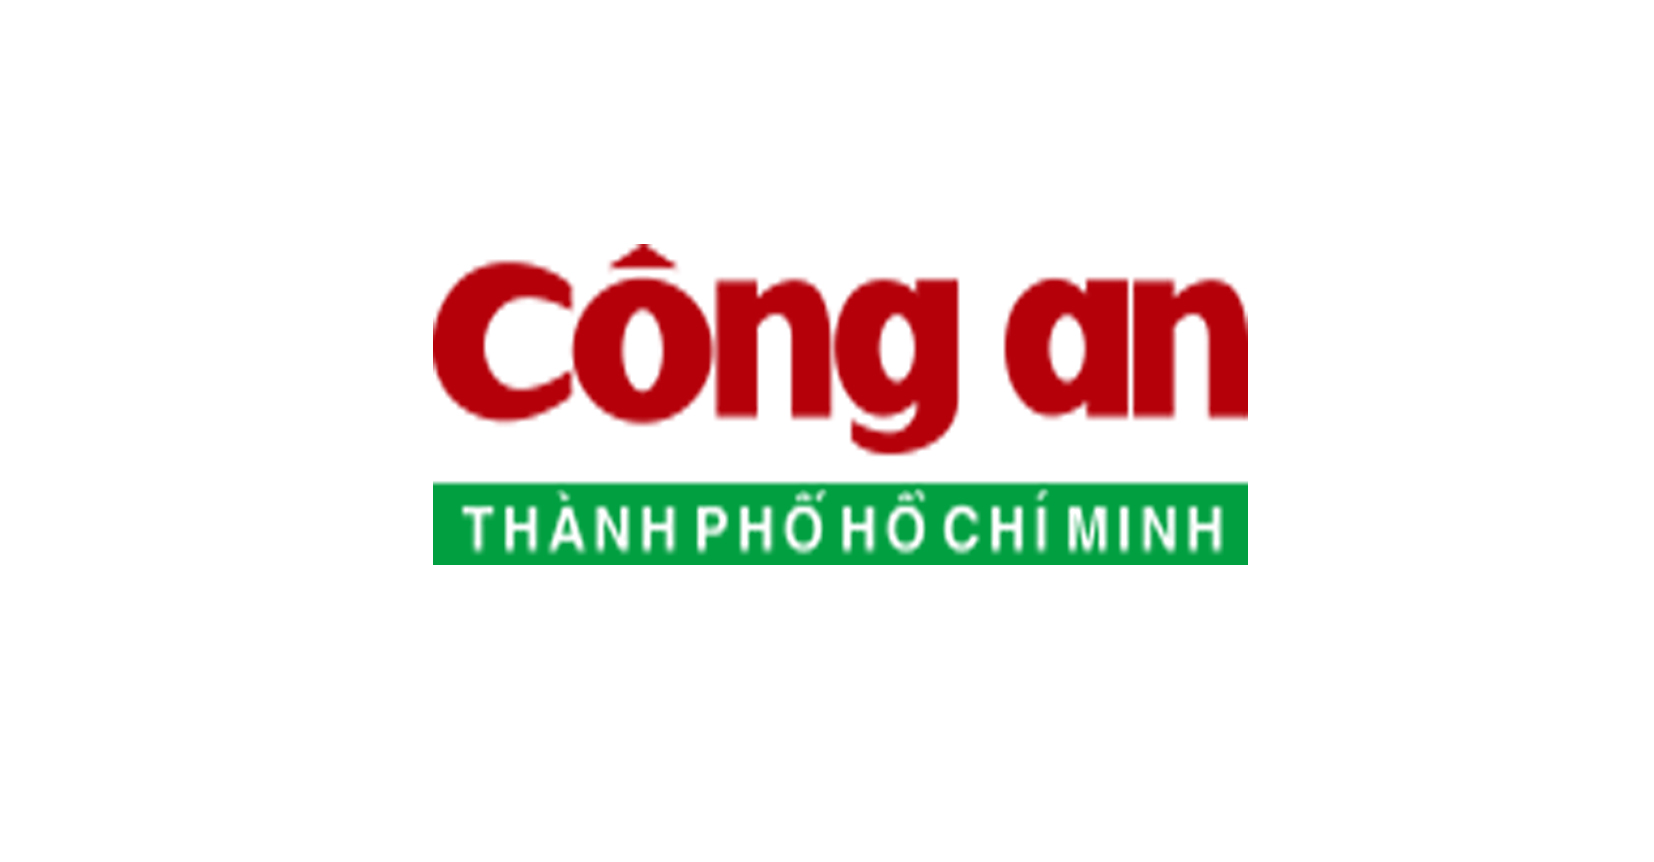 congan.com.vn